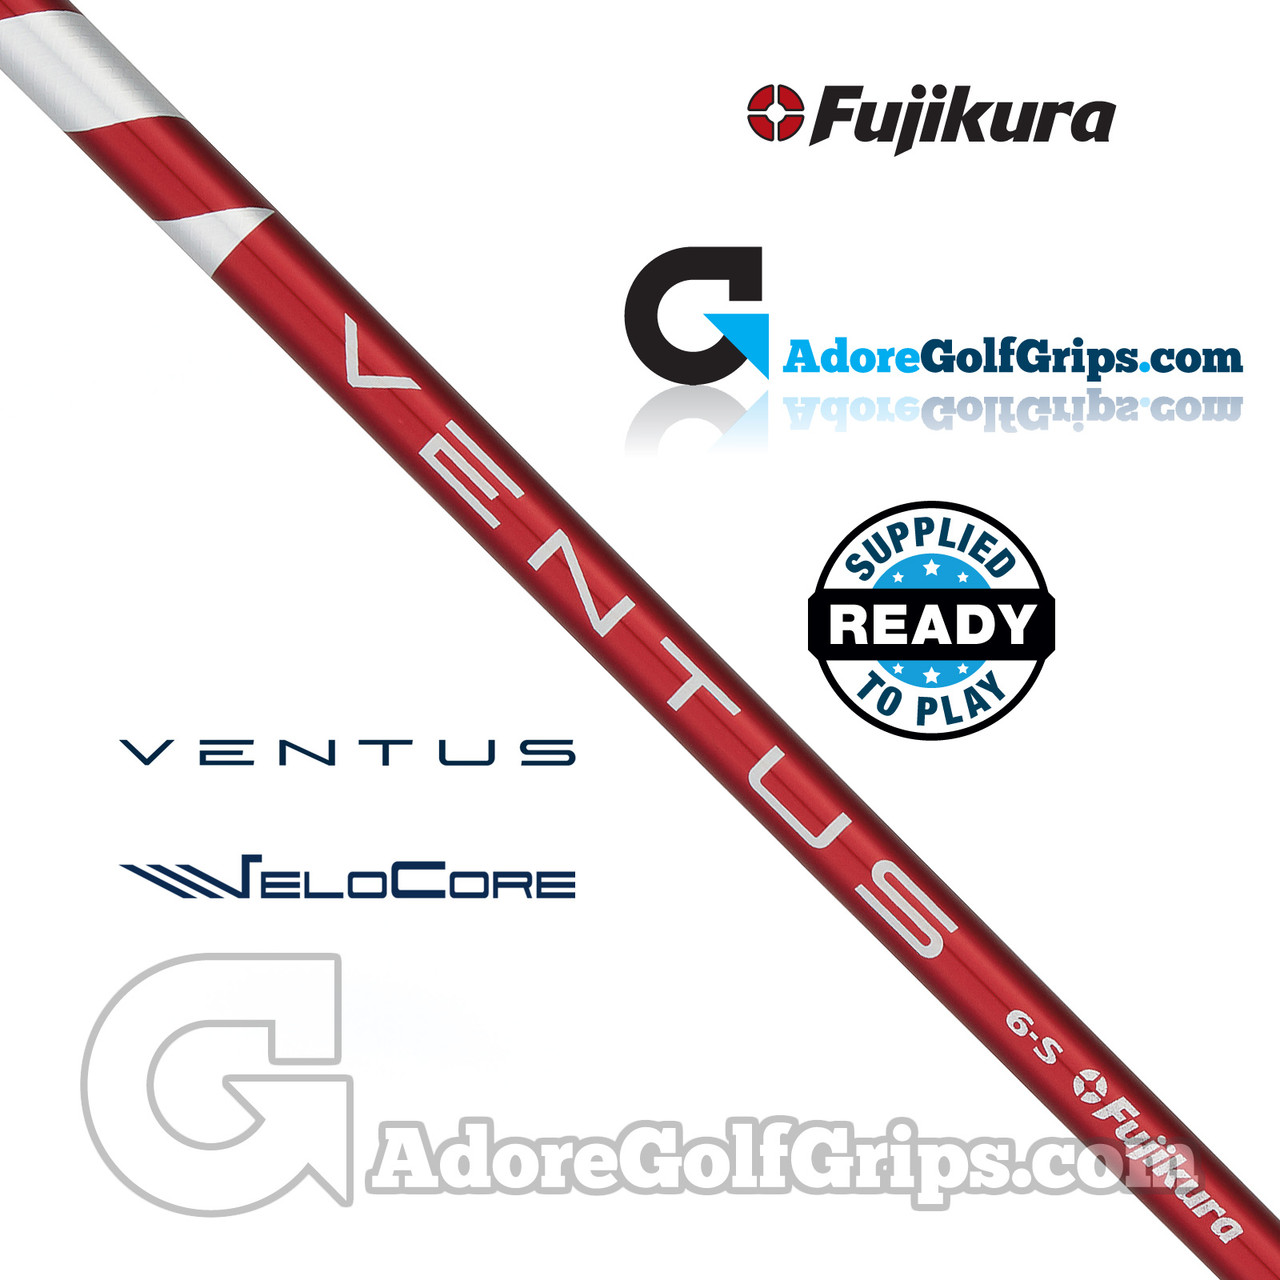 Fujikura Ventus VeloCore Red 5 Wood Shaft (58g-59g) - 0.335